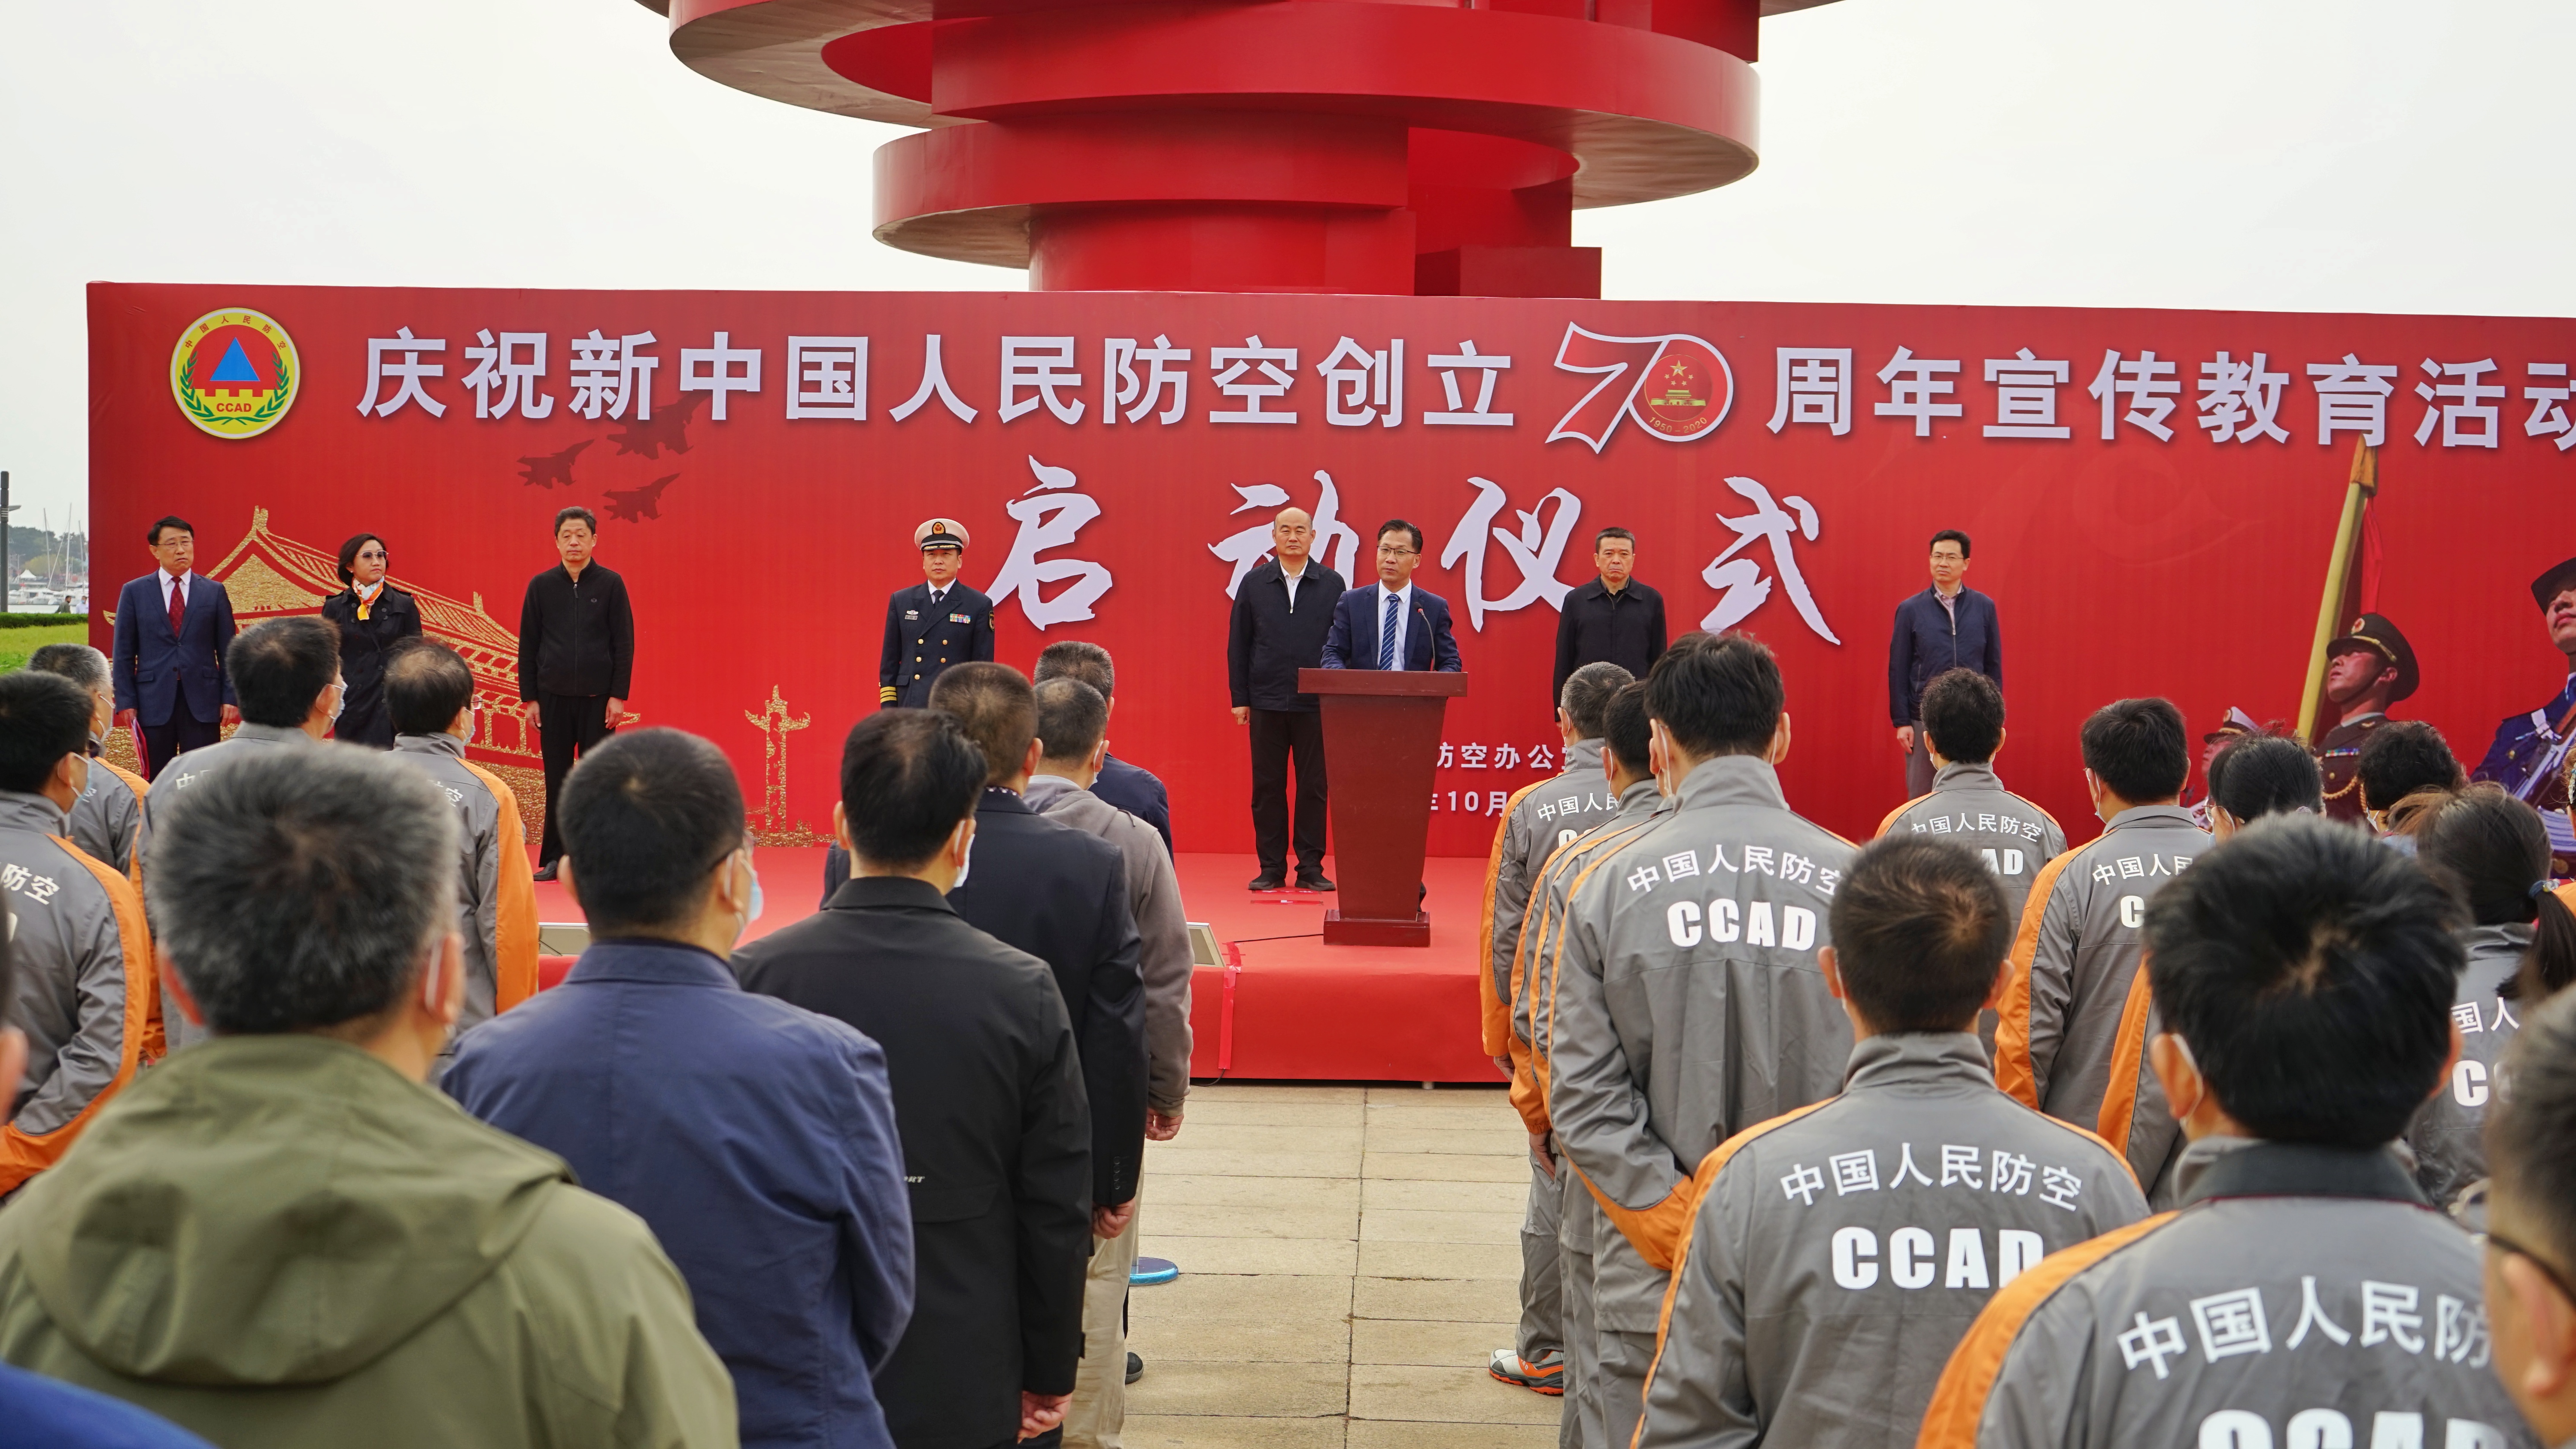 ▲青岛市启动庆祝新中国人民防空创立70周年宣传教育活动现场图